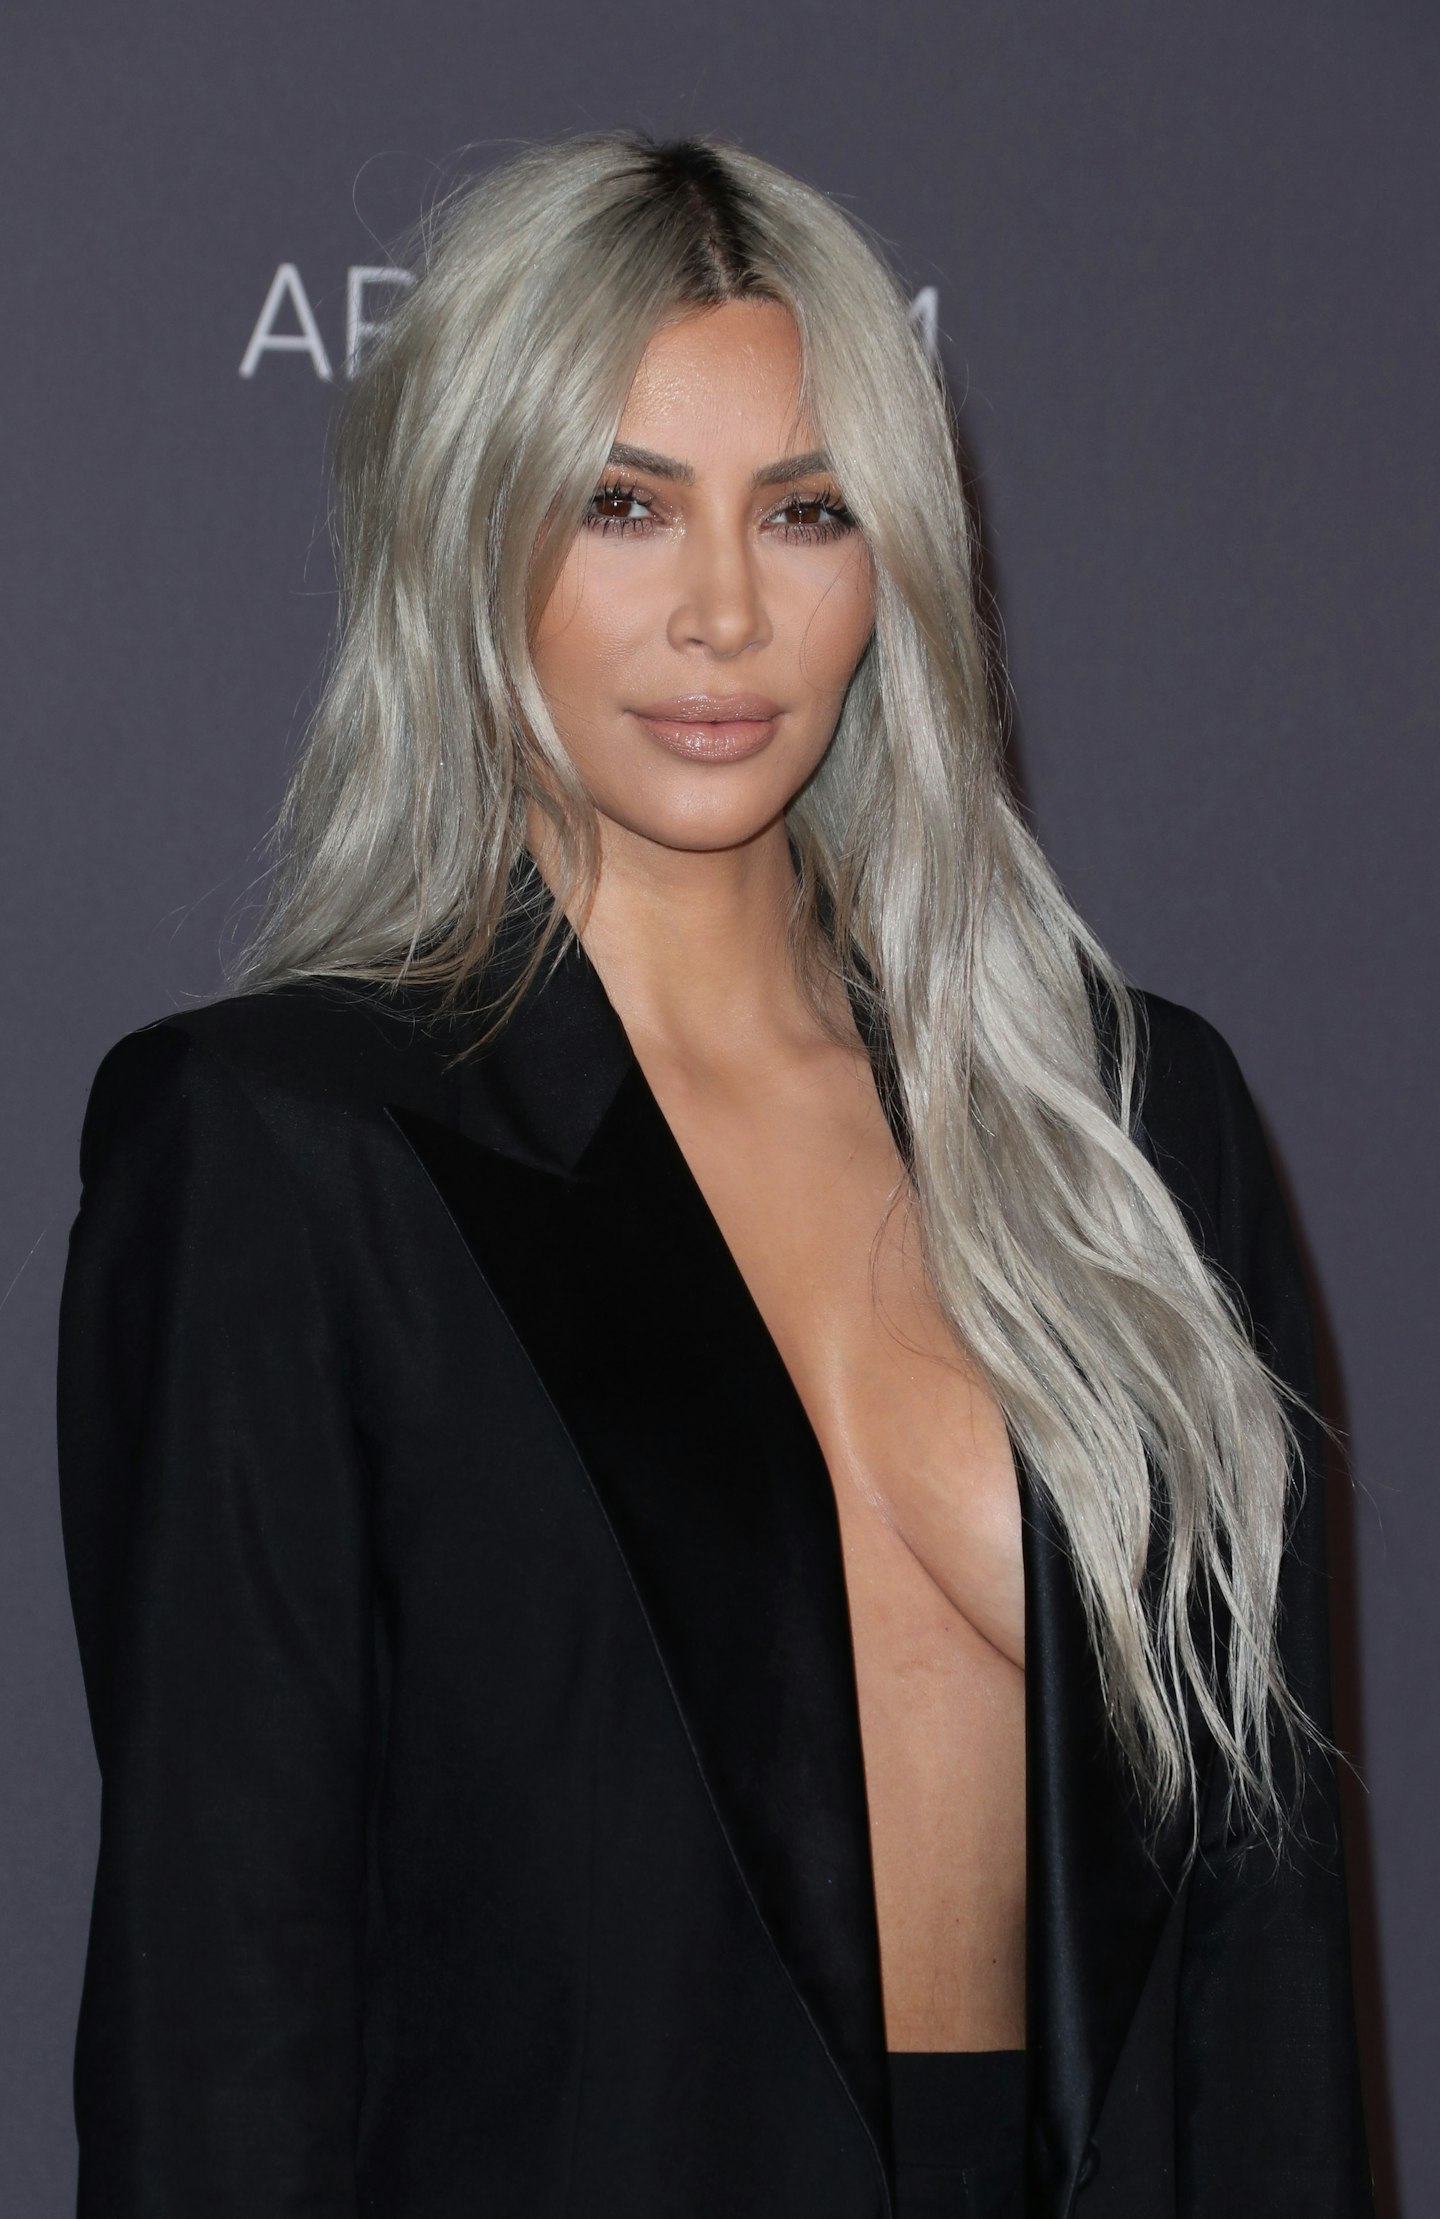 Evolution of Kim Kardashian's Hair